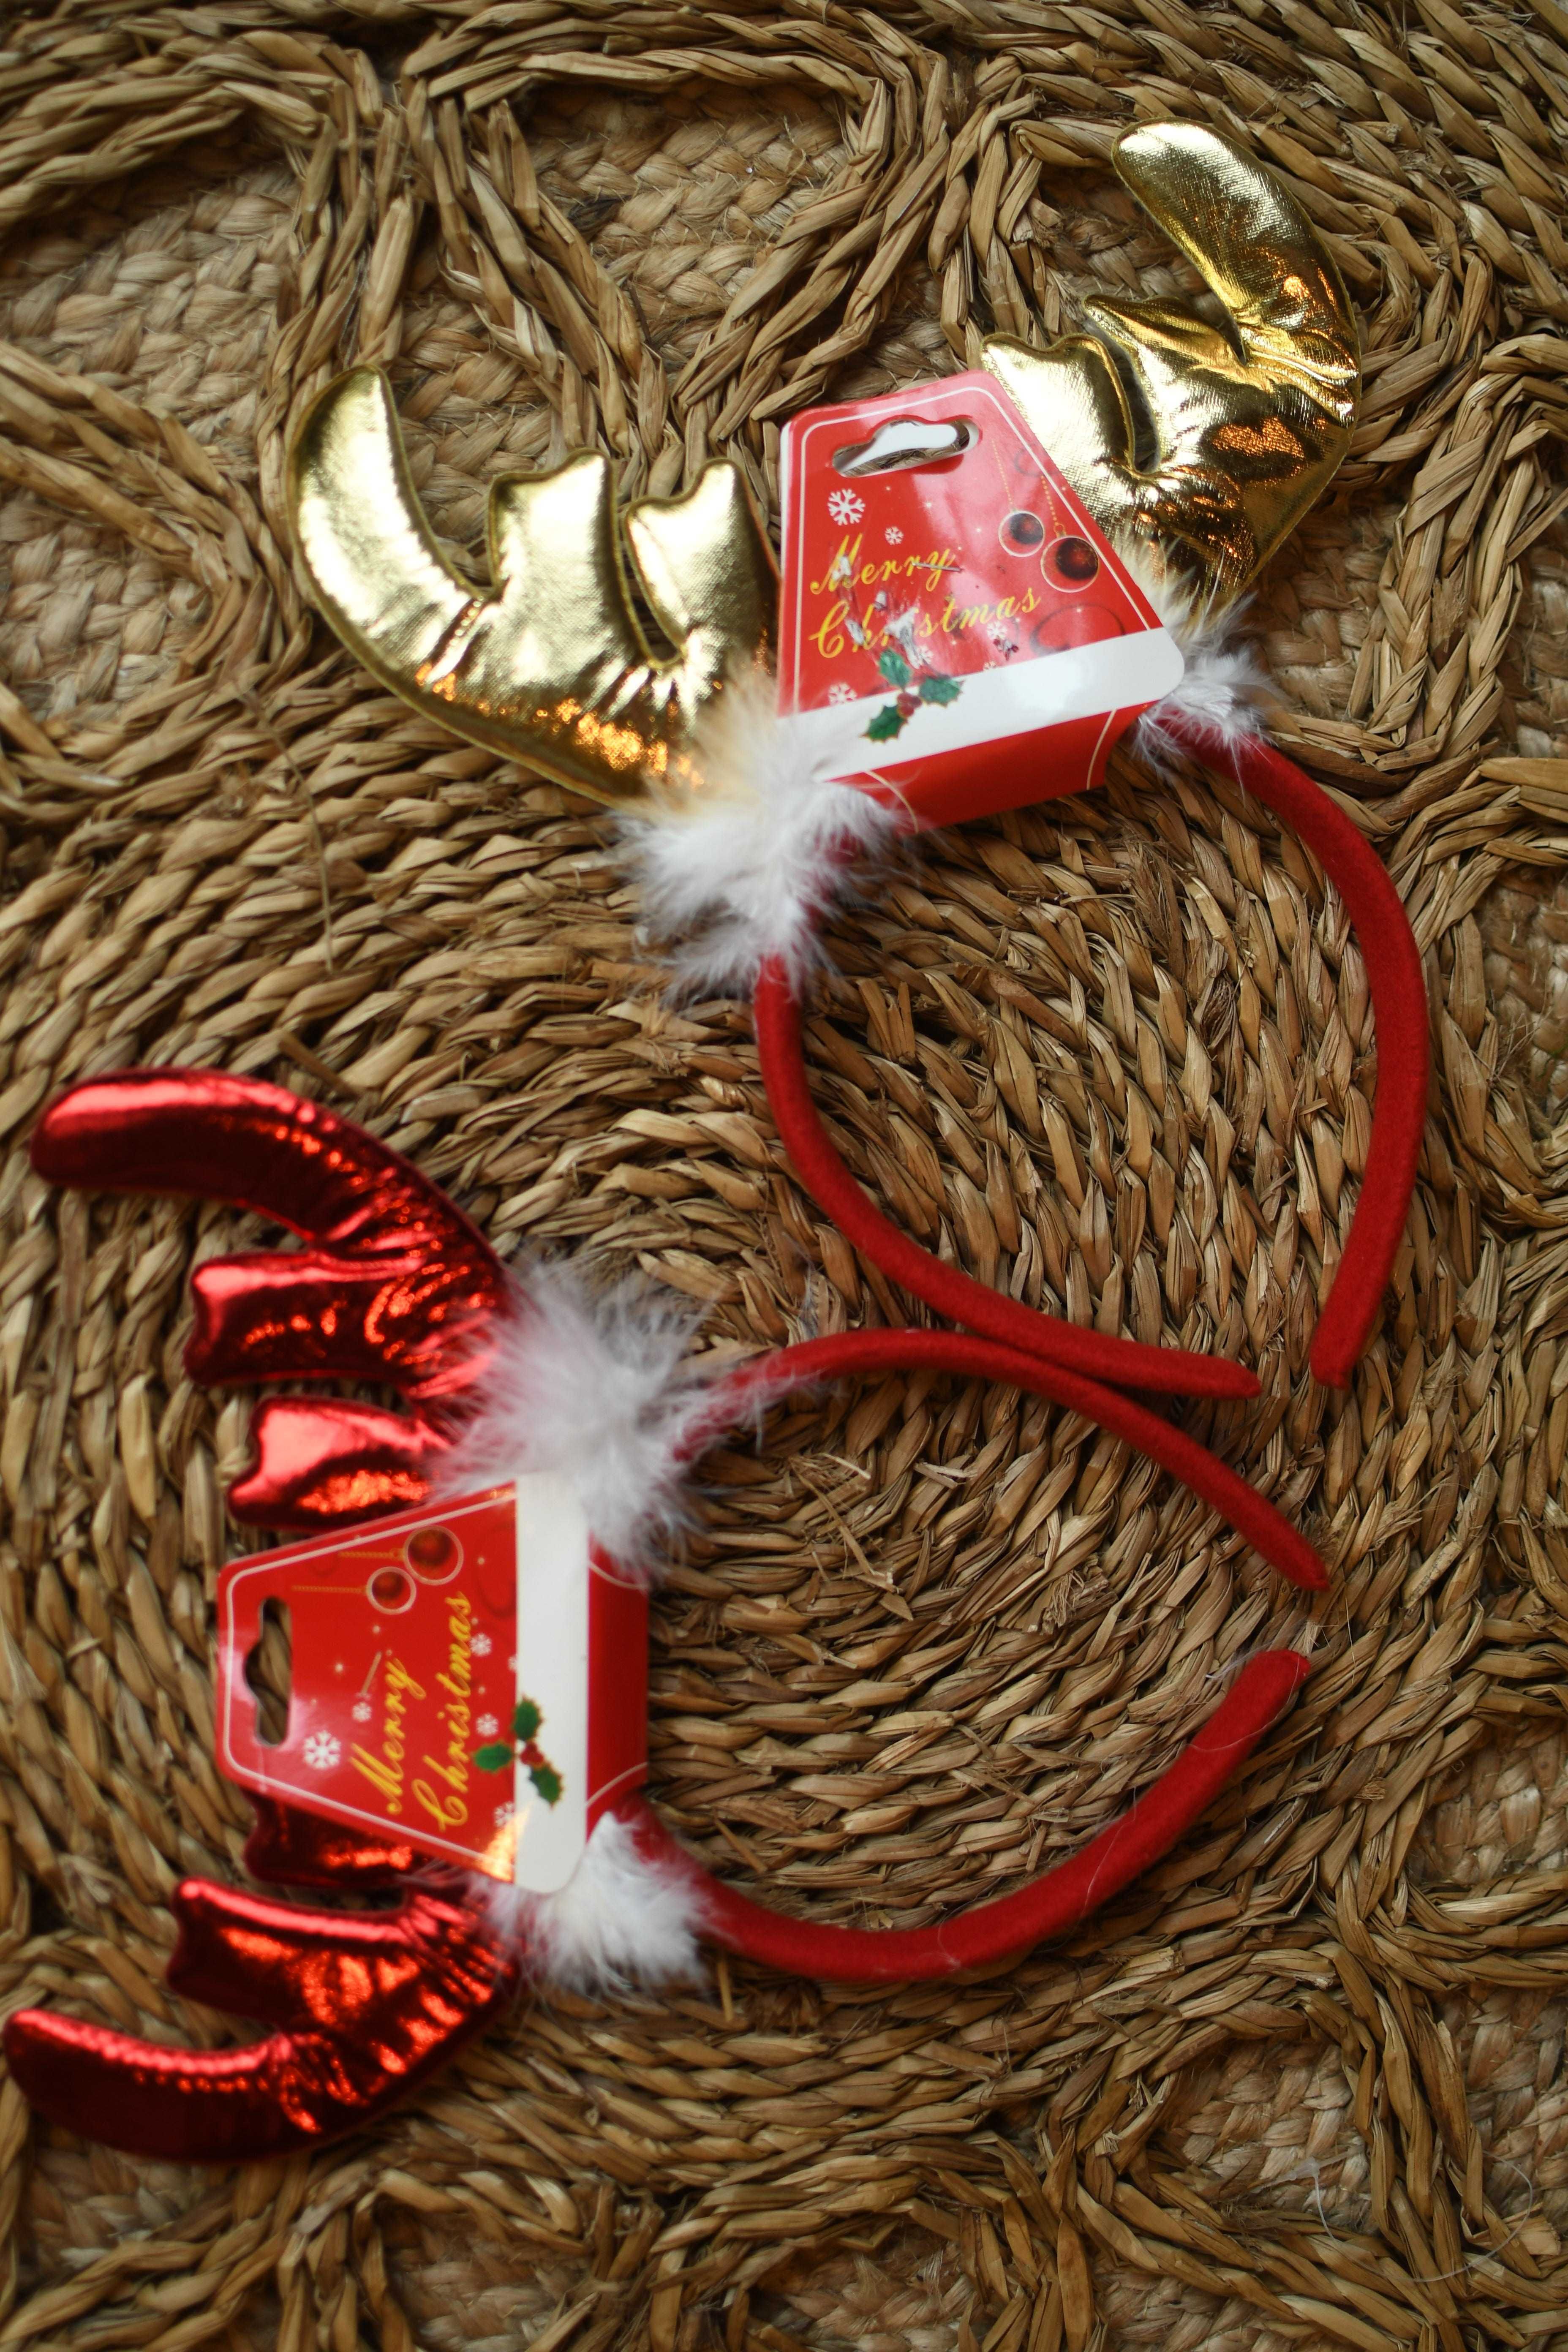 Opaski renifer rogi do sesji świątecznej zdjęciowej